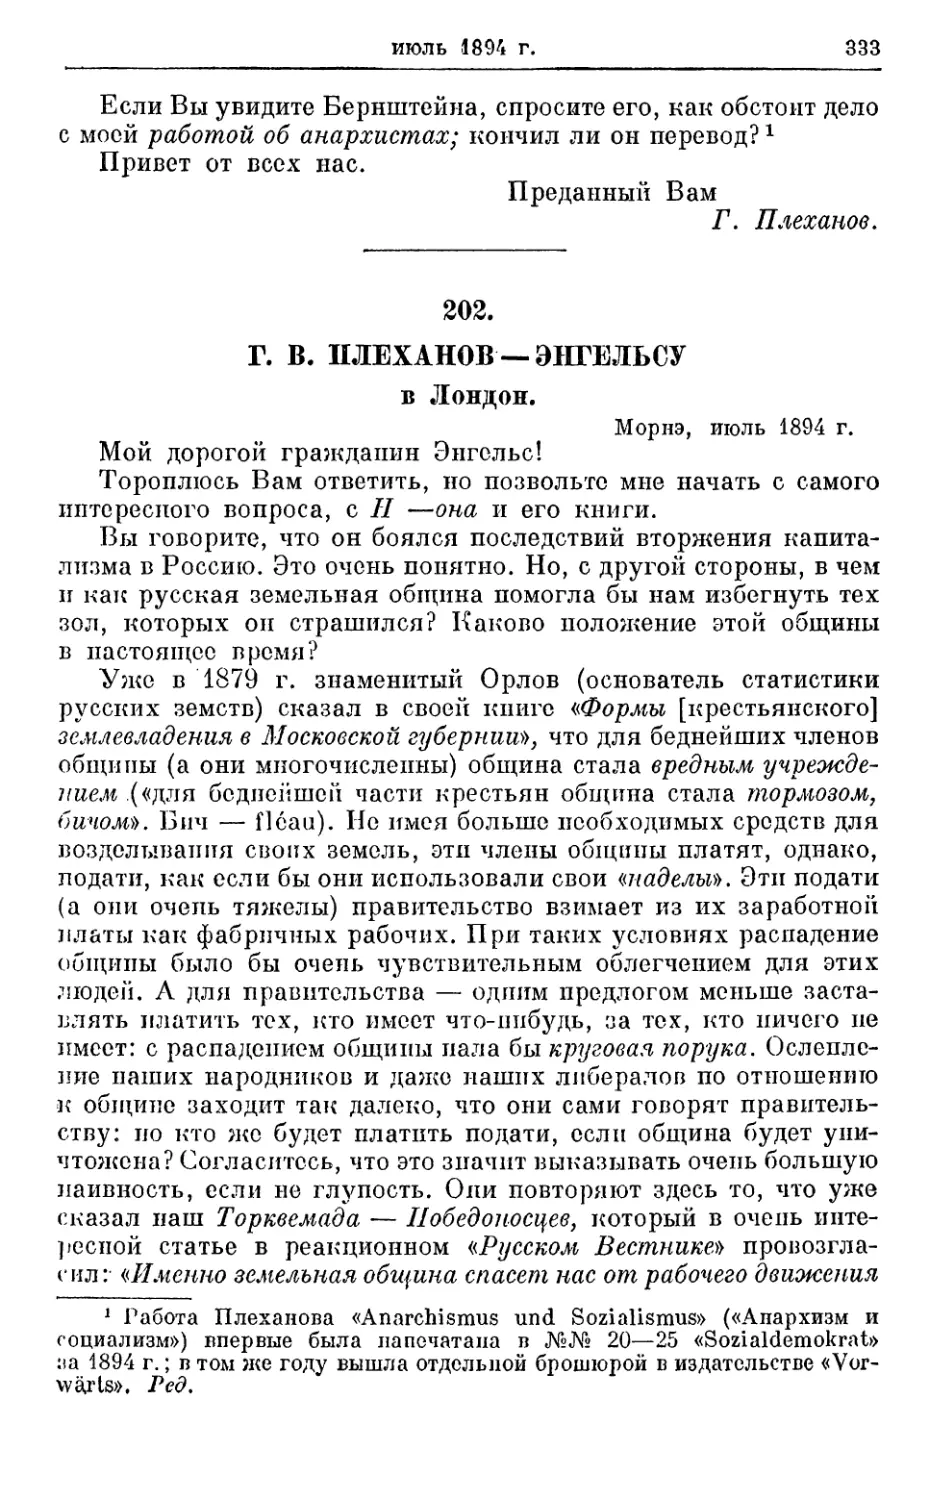 202. Плеханов — Энгельсу, июль 1894г